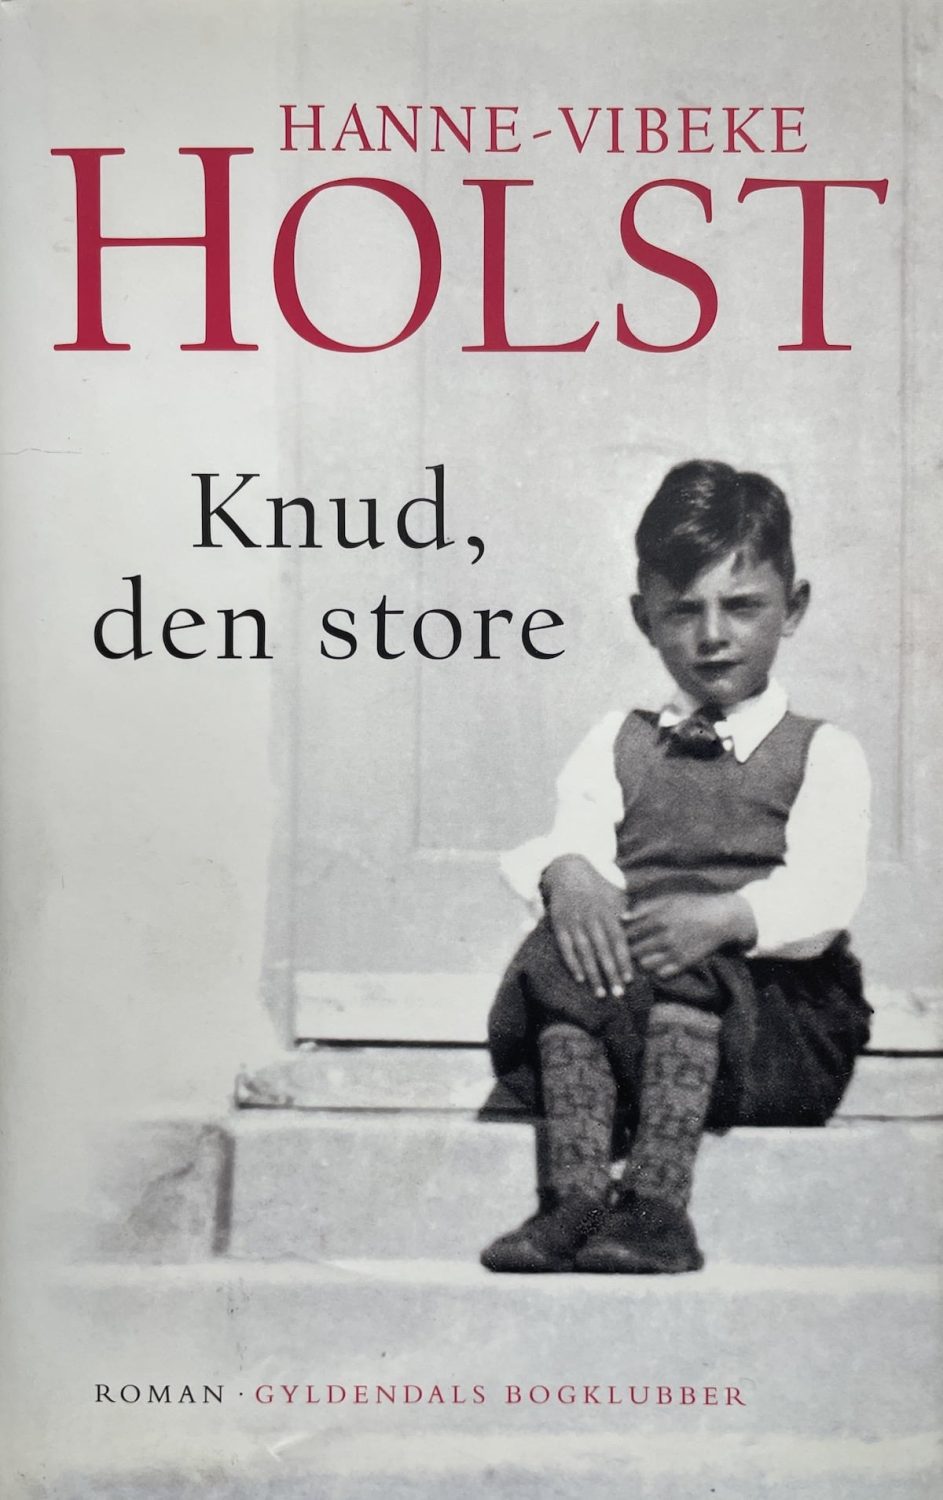 Knud, den store, Hanne-Vibeke Holst, brugt bog